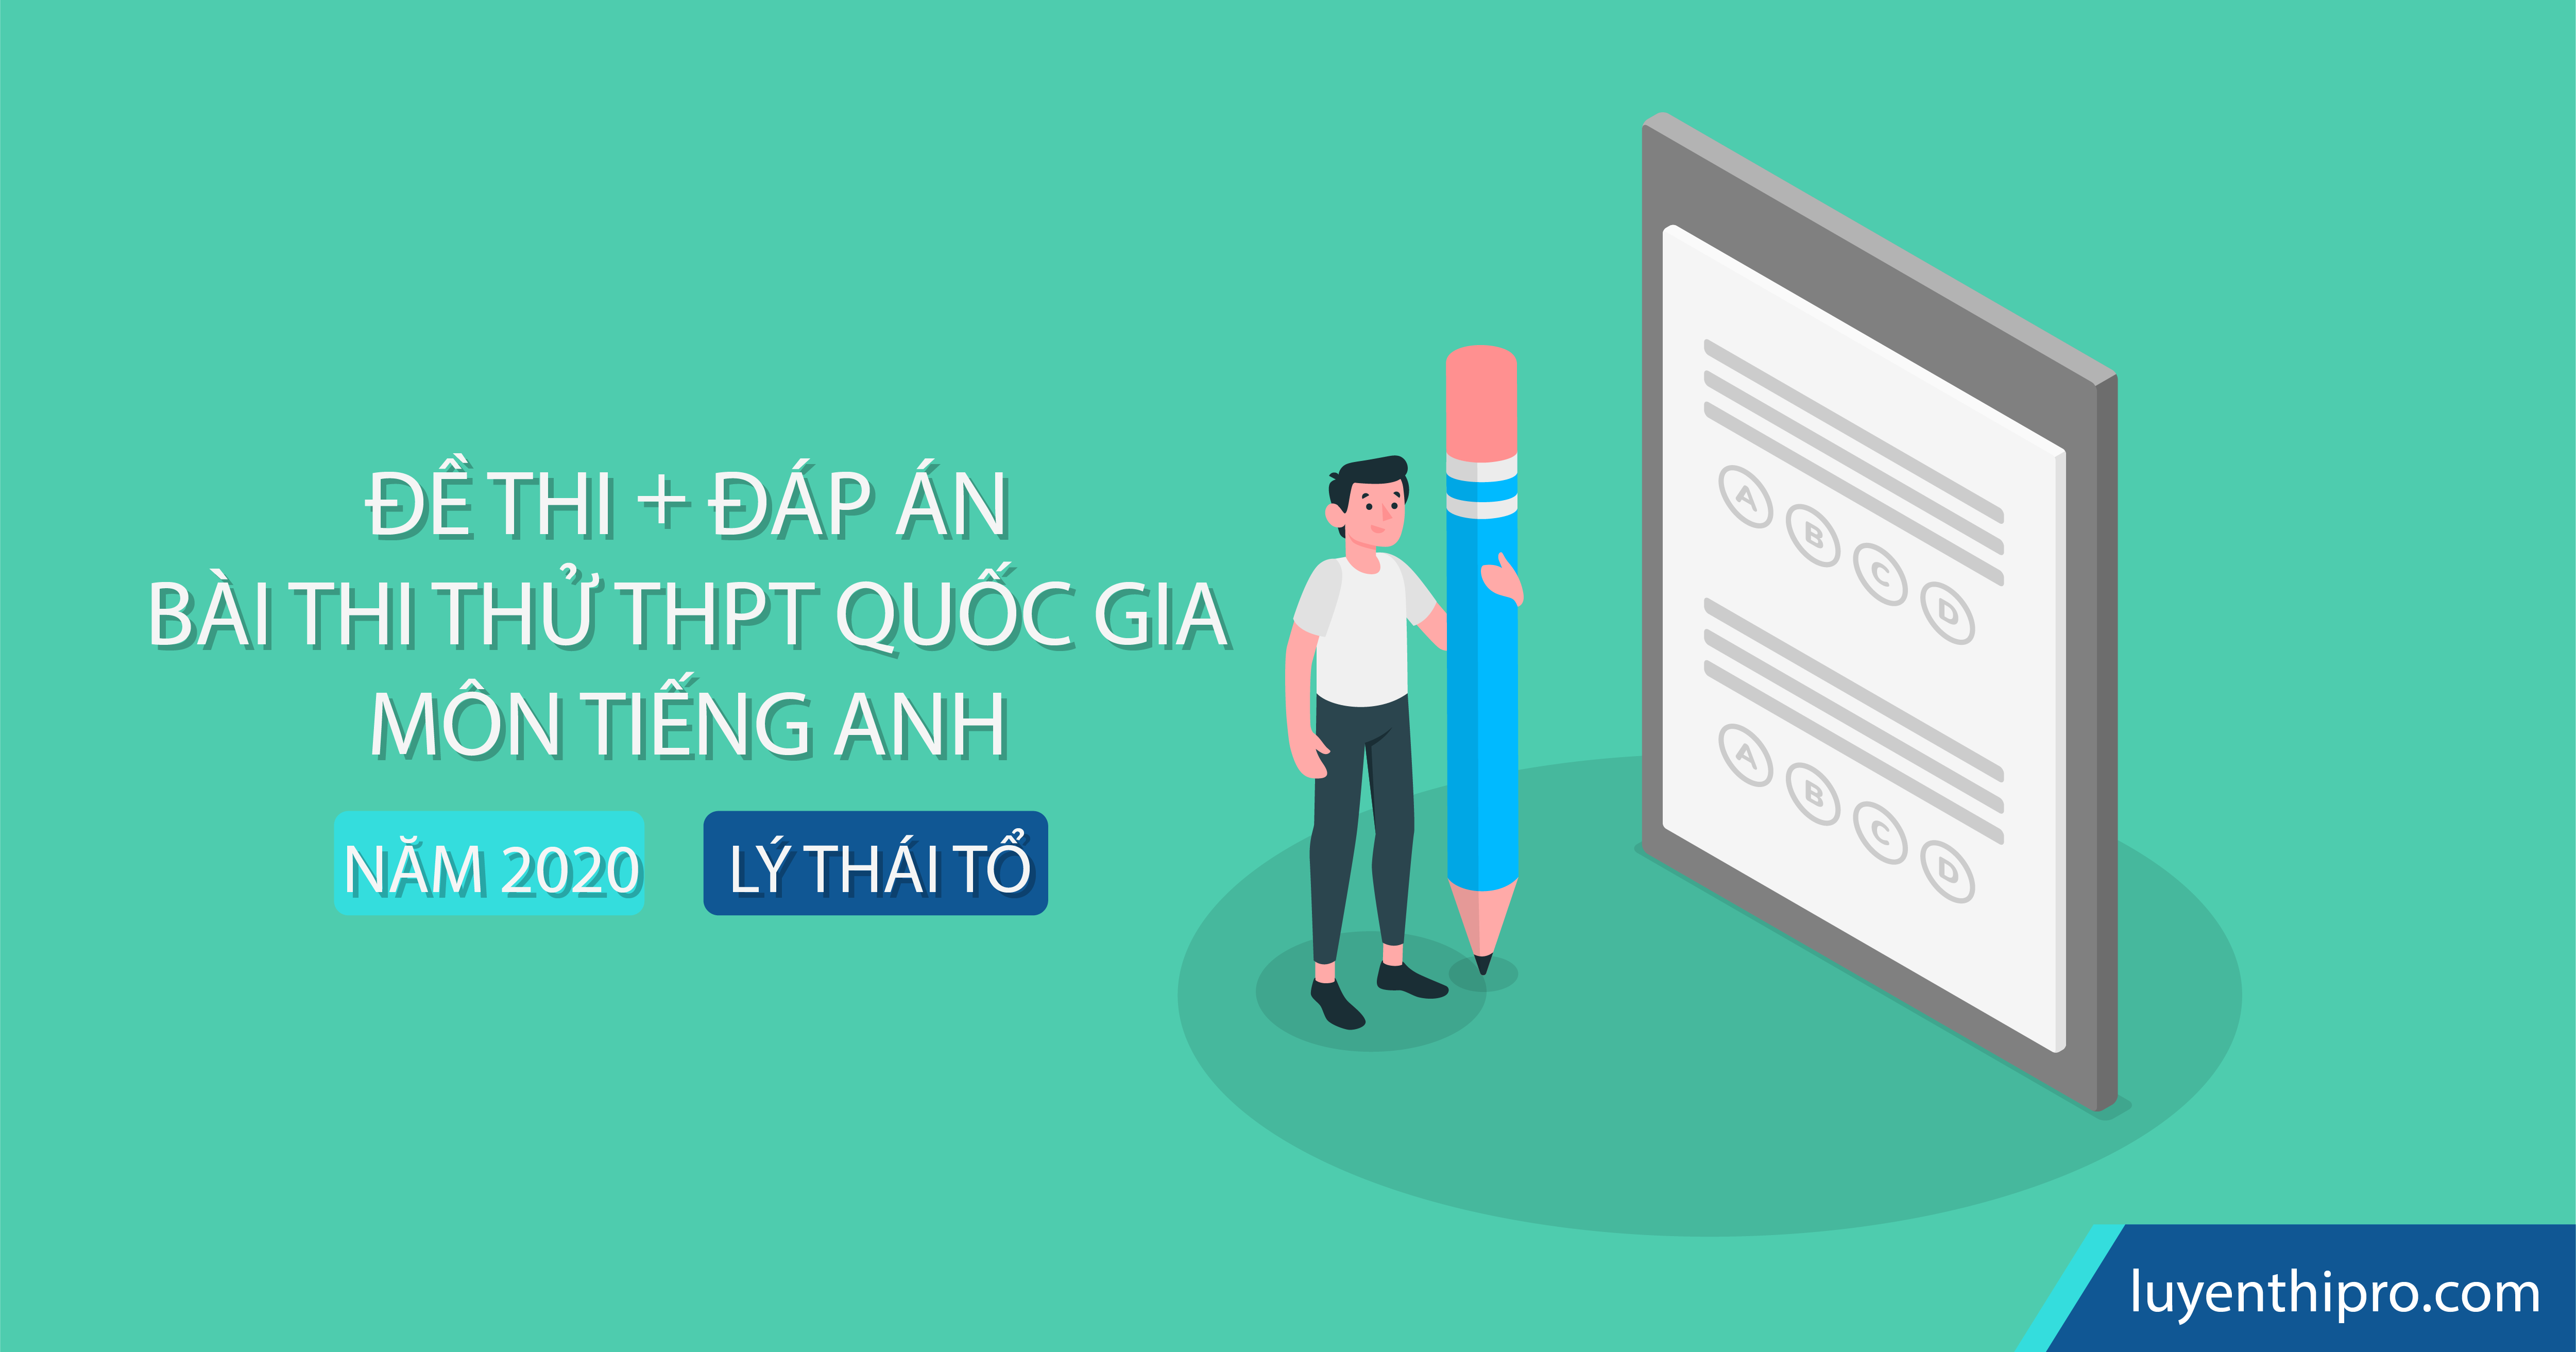 Đề thi thử tiếng Anh THPT Quốc gia 2020 - Trường THPT Lý Thái Tổ (Bắc Ninh)